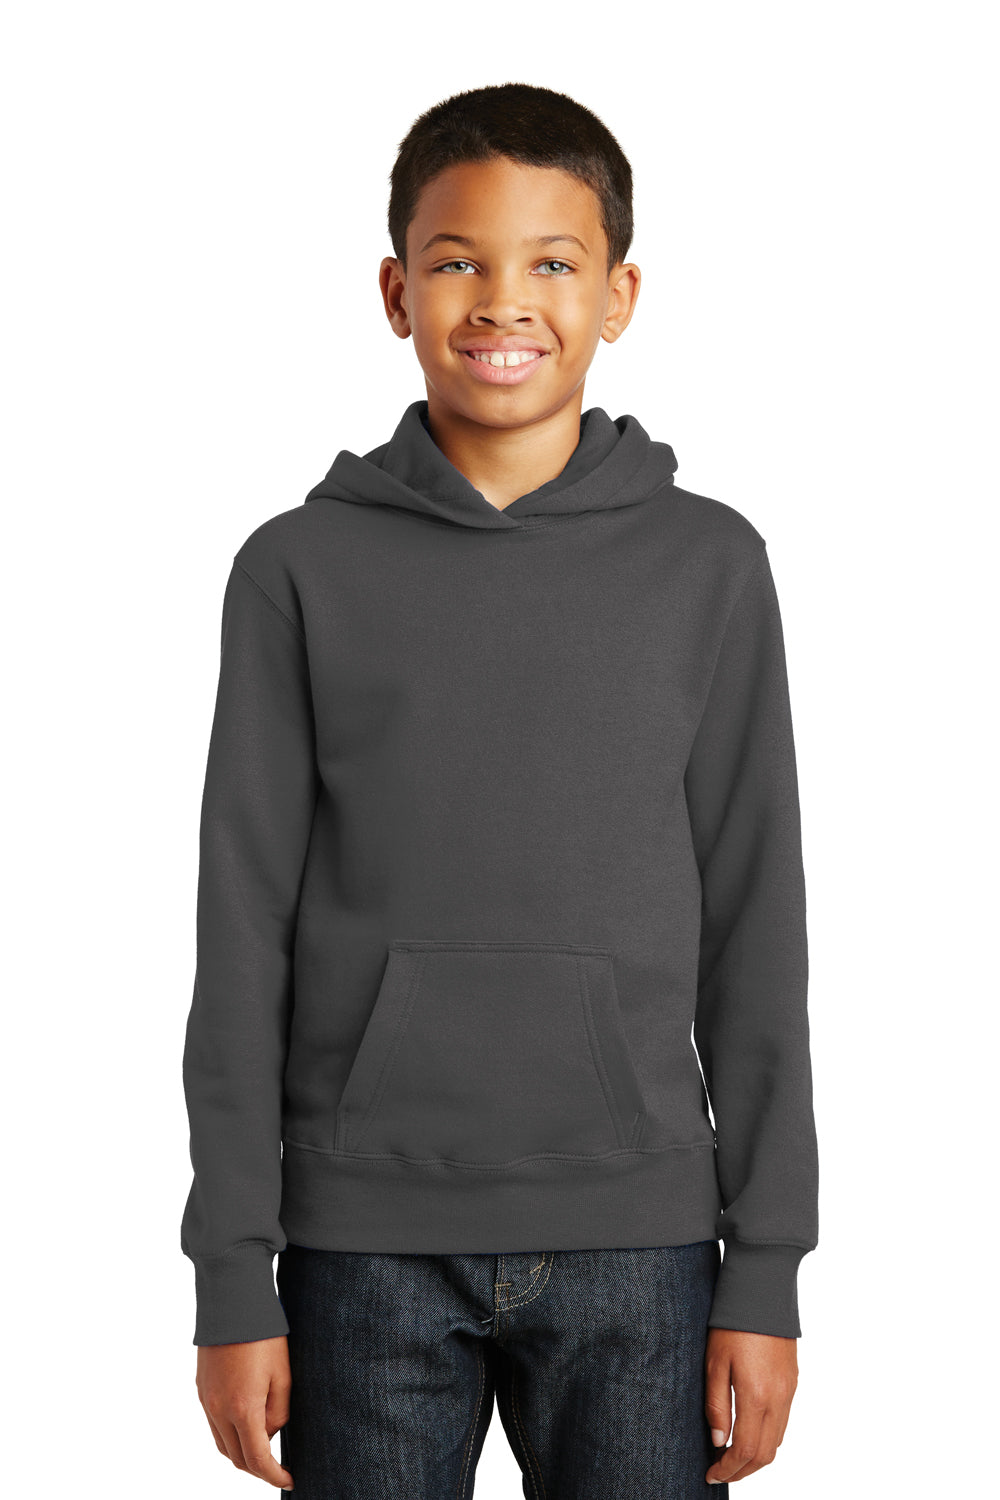 Port & Company PC850YH Youth Fan Favorite Fleece Hooded Sweatshirt Hoodie Charcoal Grey Front